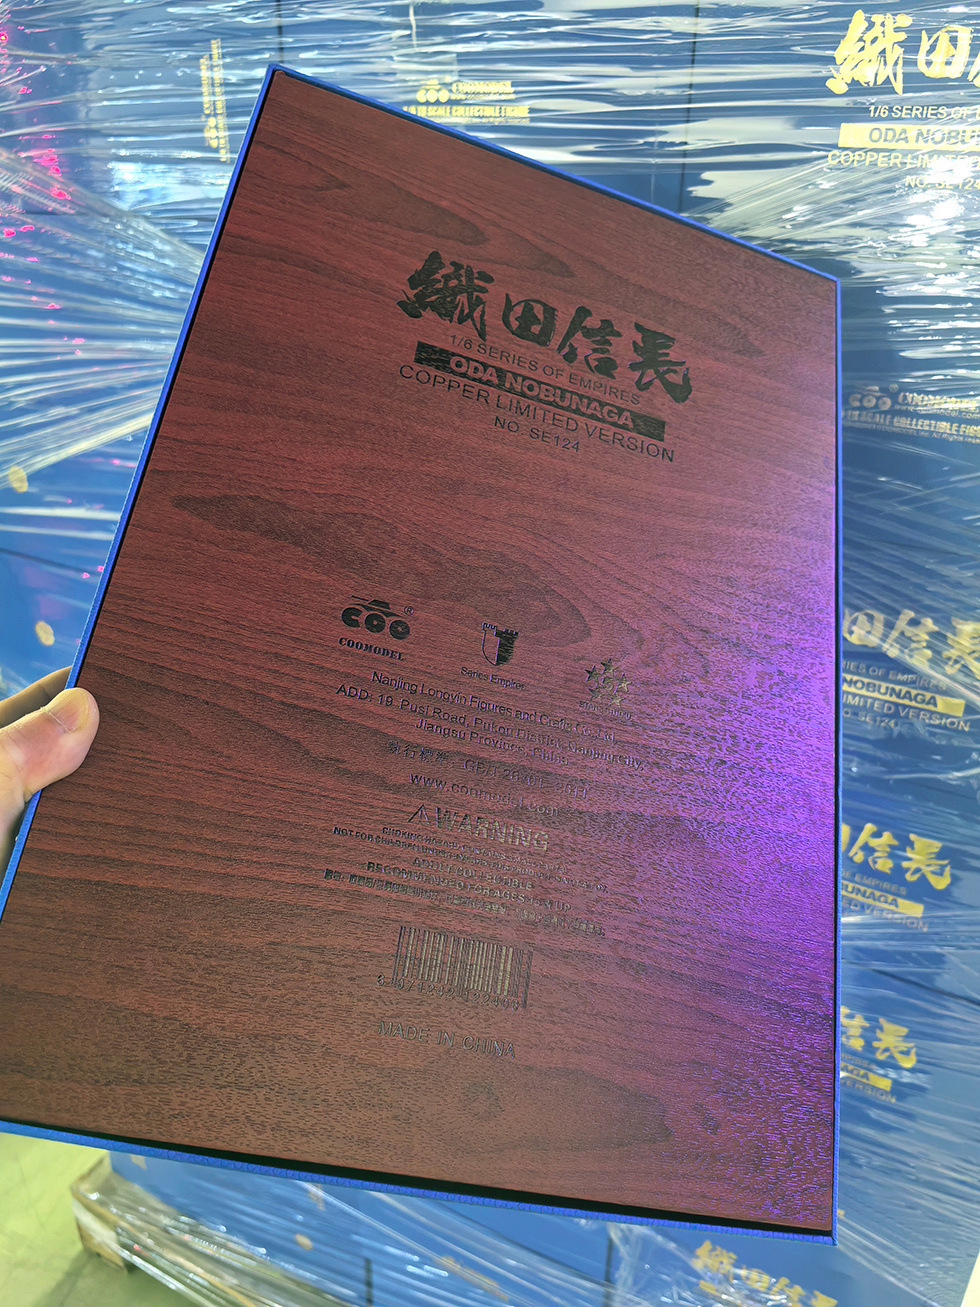 OdaNobunaga - NEW PRODUCT: COOMODEL: 1/6 Empire Series - Oda Nobunaga Samurai Edition/Hunting Edition/Pure Copper Standard Edition/Pure Copper Limited Collection Edition #SE124 B6b66012